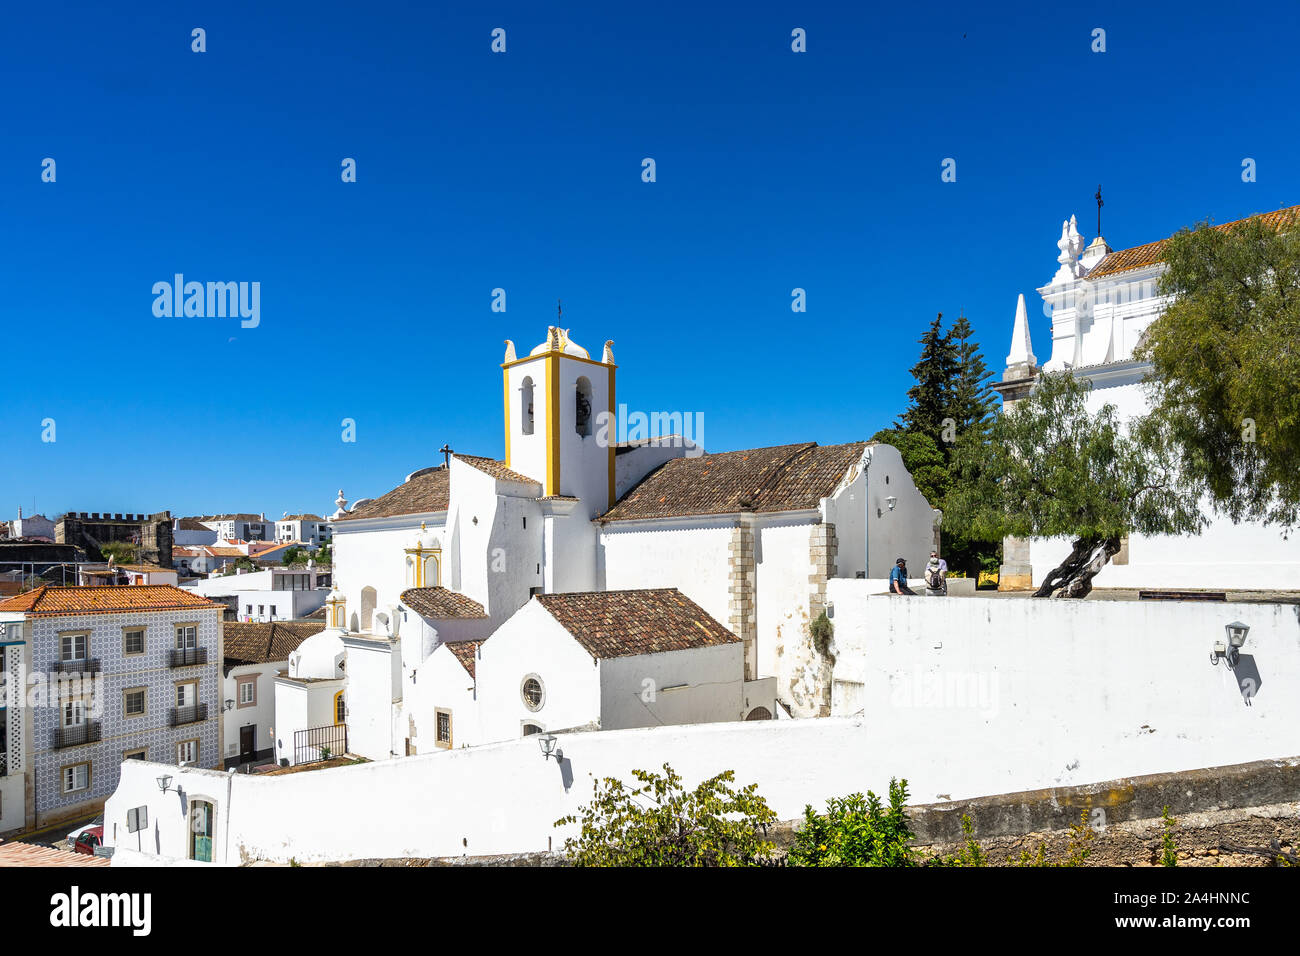 Vue panoramique de l'église Igreja de Santiago (Santiago) Château de Tavira, Algarve, Portugal Banque D'Images